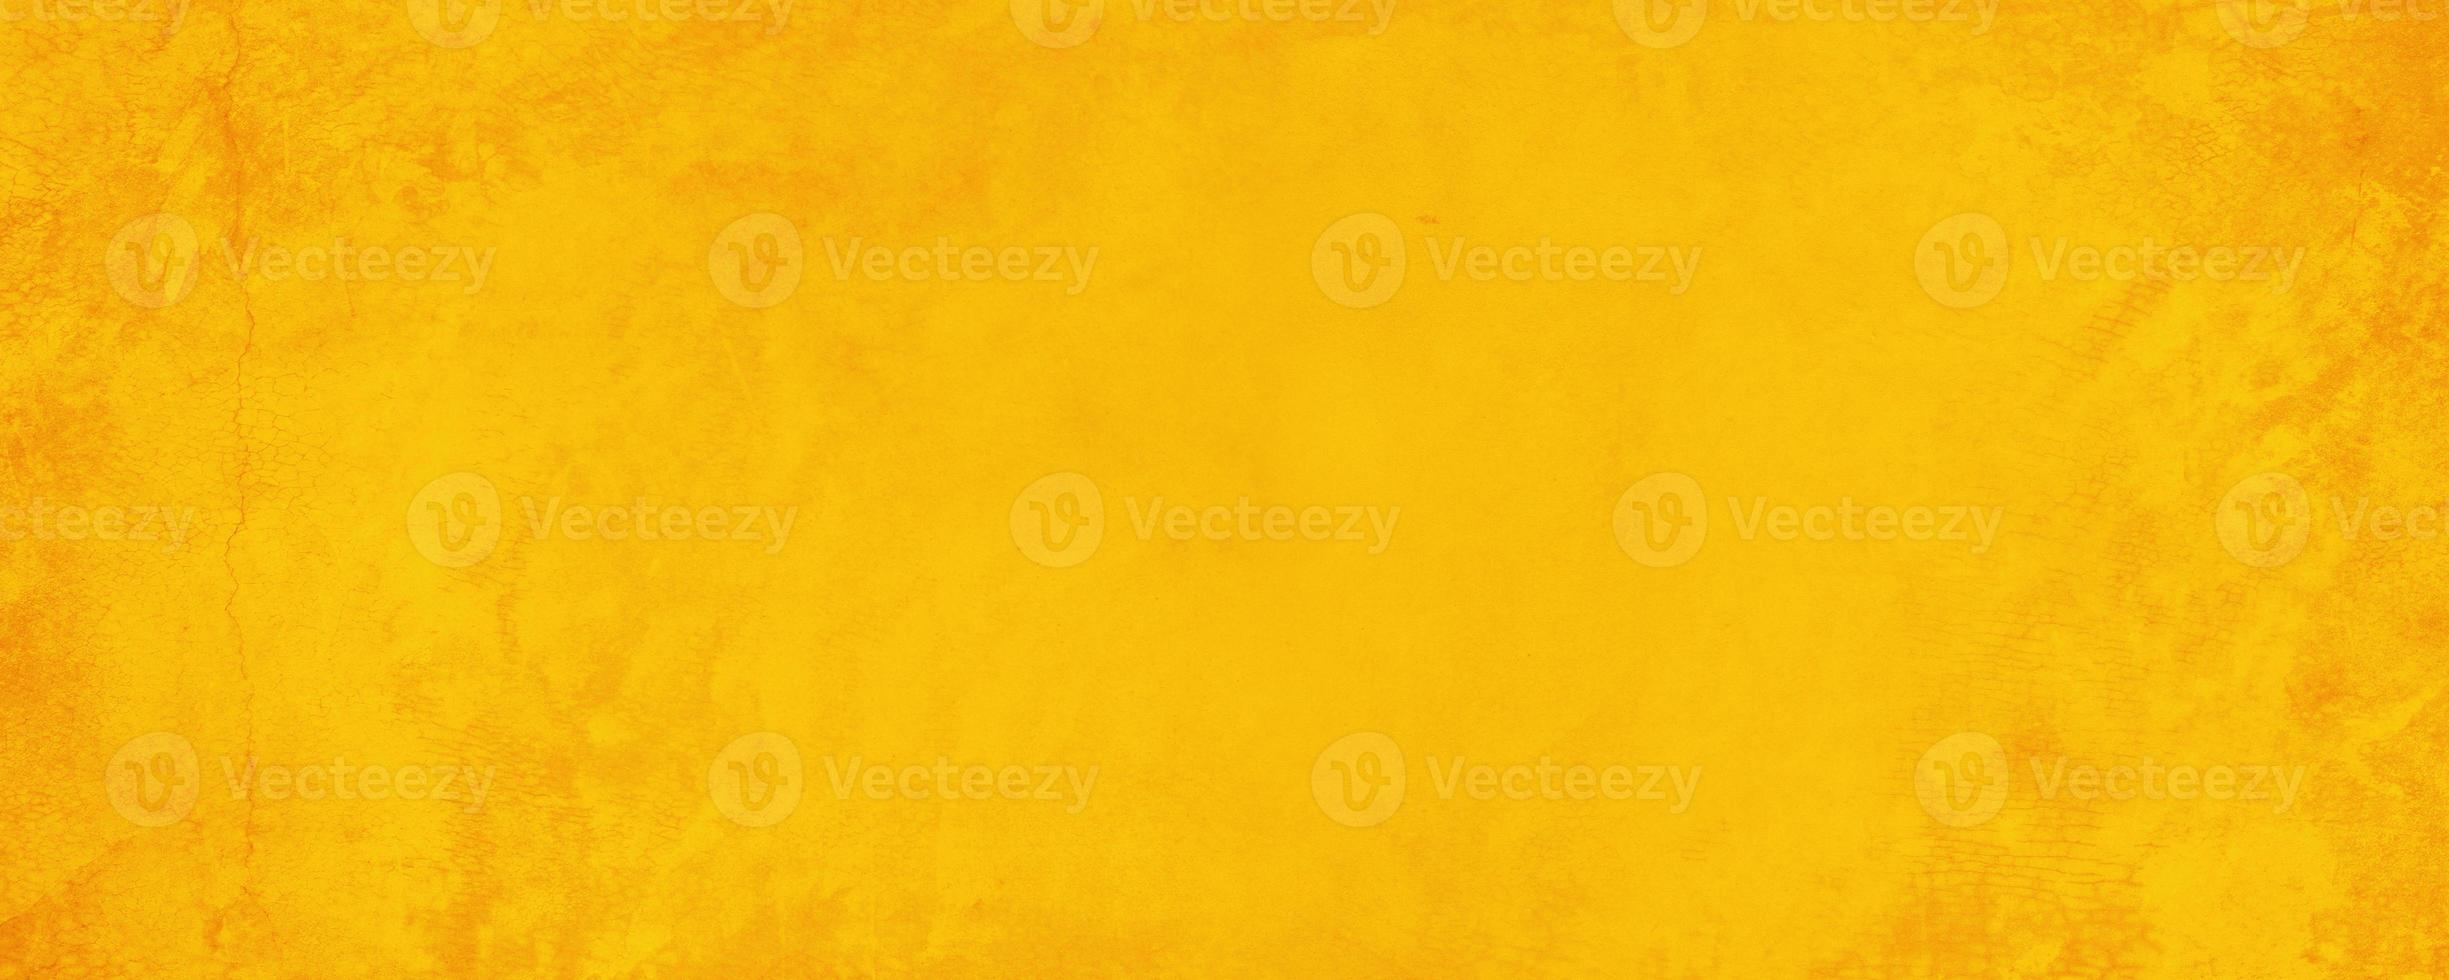 sfondo muro di cemento texture orizzontale giallo e arancione foto